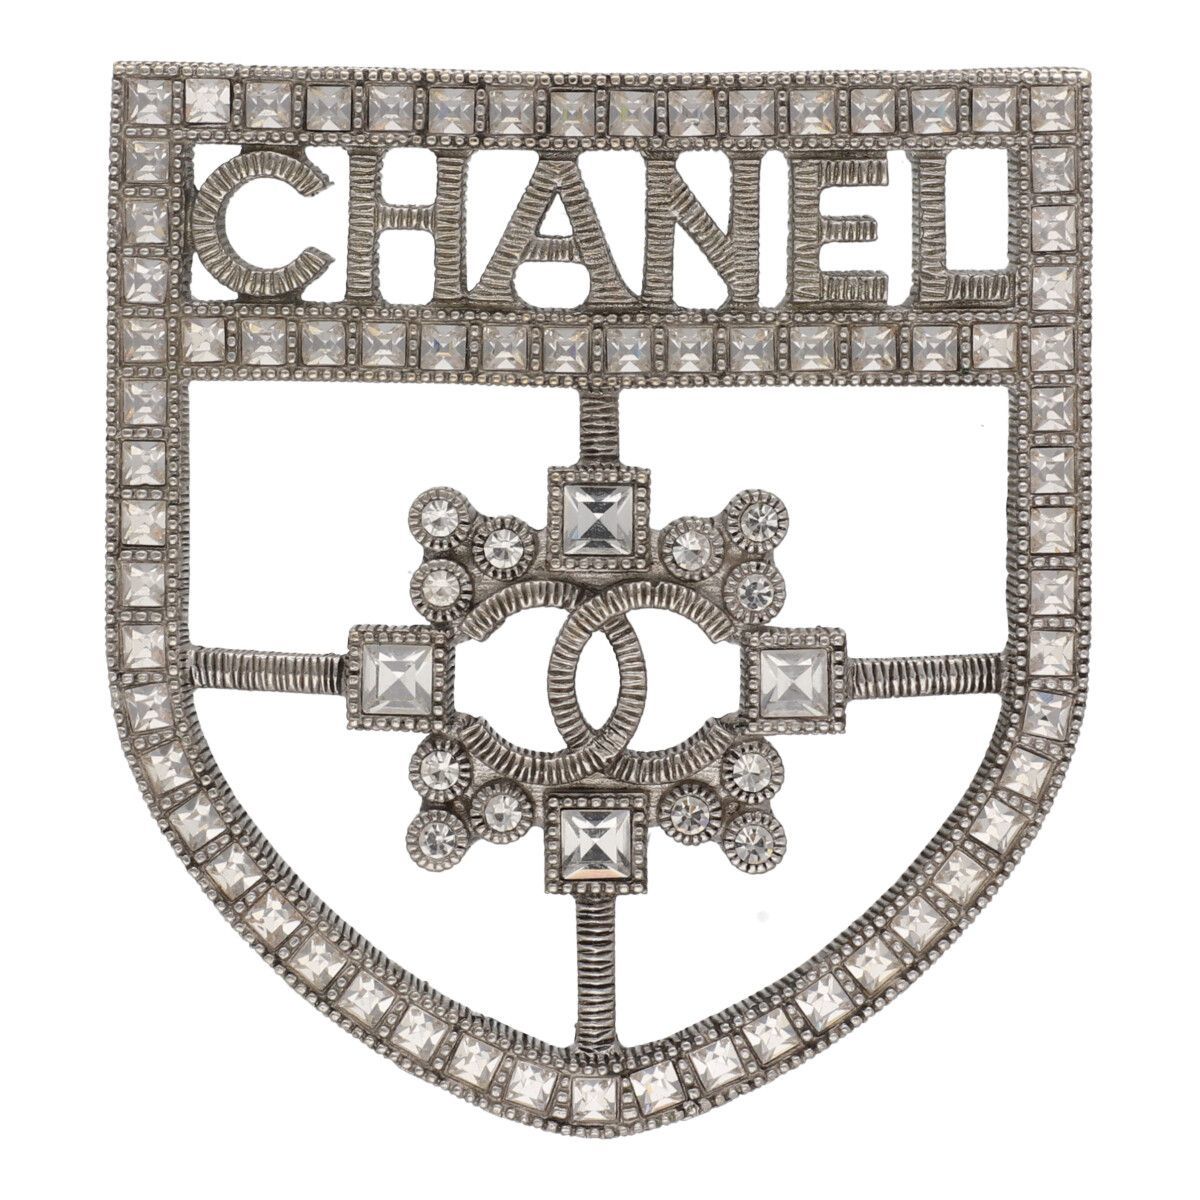 [ б/у ] CHANEL Chanel эмблема стразы брошь D17V серебряный Logo здесь Mark защита 23043601 RS